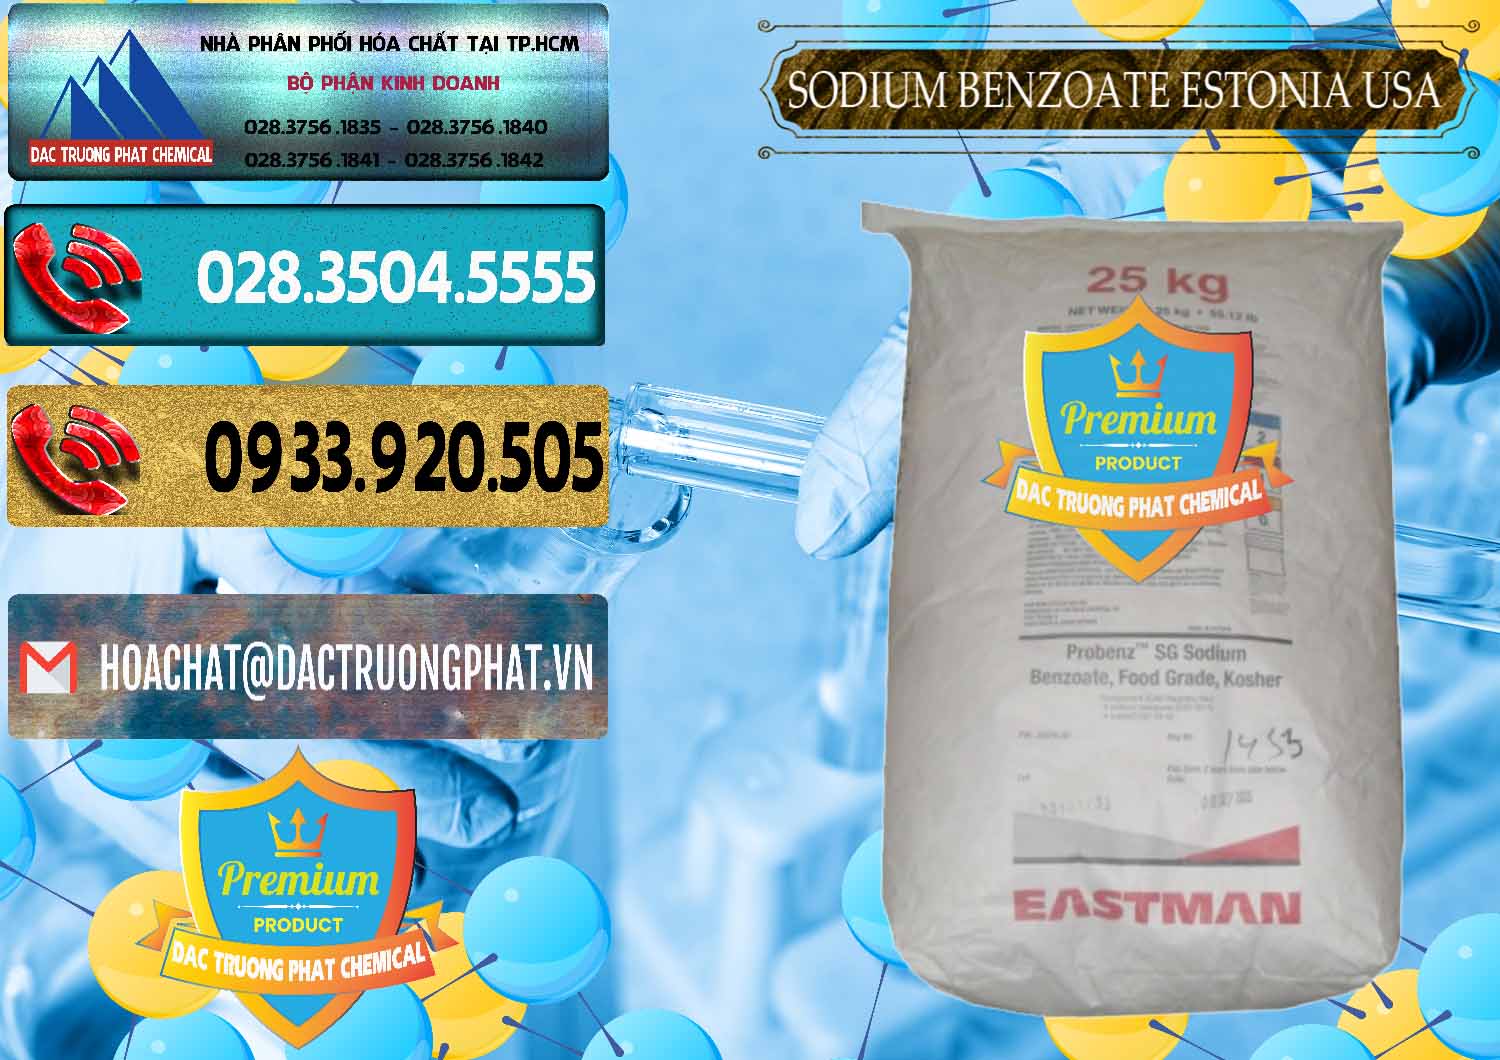 Cty chuyên kinh doanh - bán Sodium Benzoate - Mốc Bột Estonia Mỹ USA - 0468 - Đơn vị nhập khẩu _ cung cấp hóa chất tại TP.HCM - hoachatdetnhuom.com